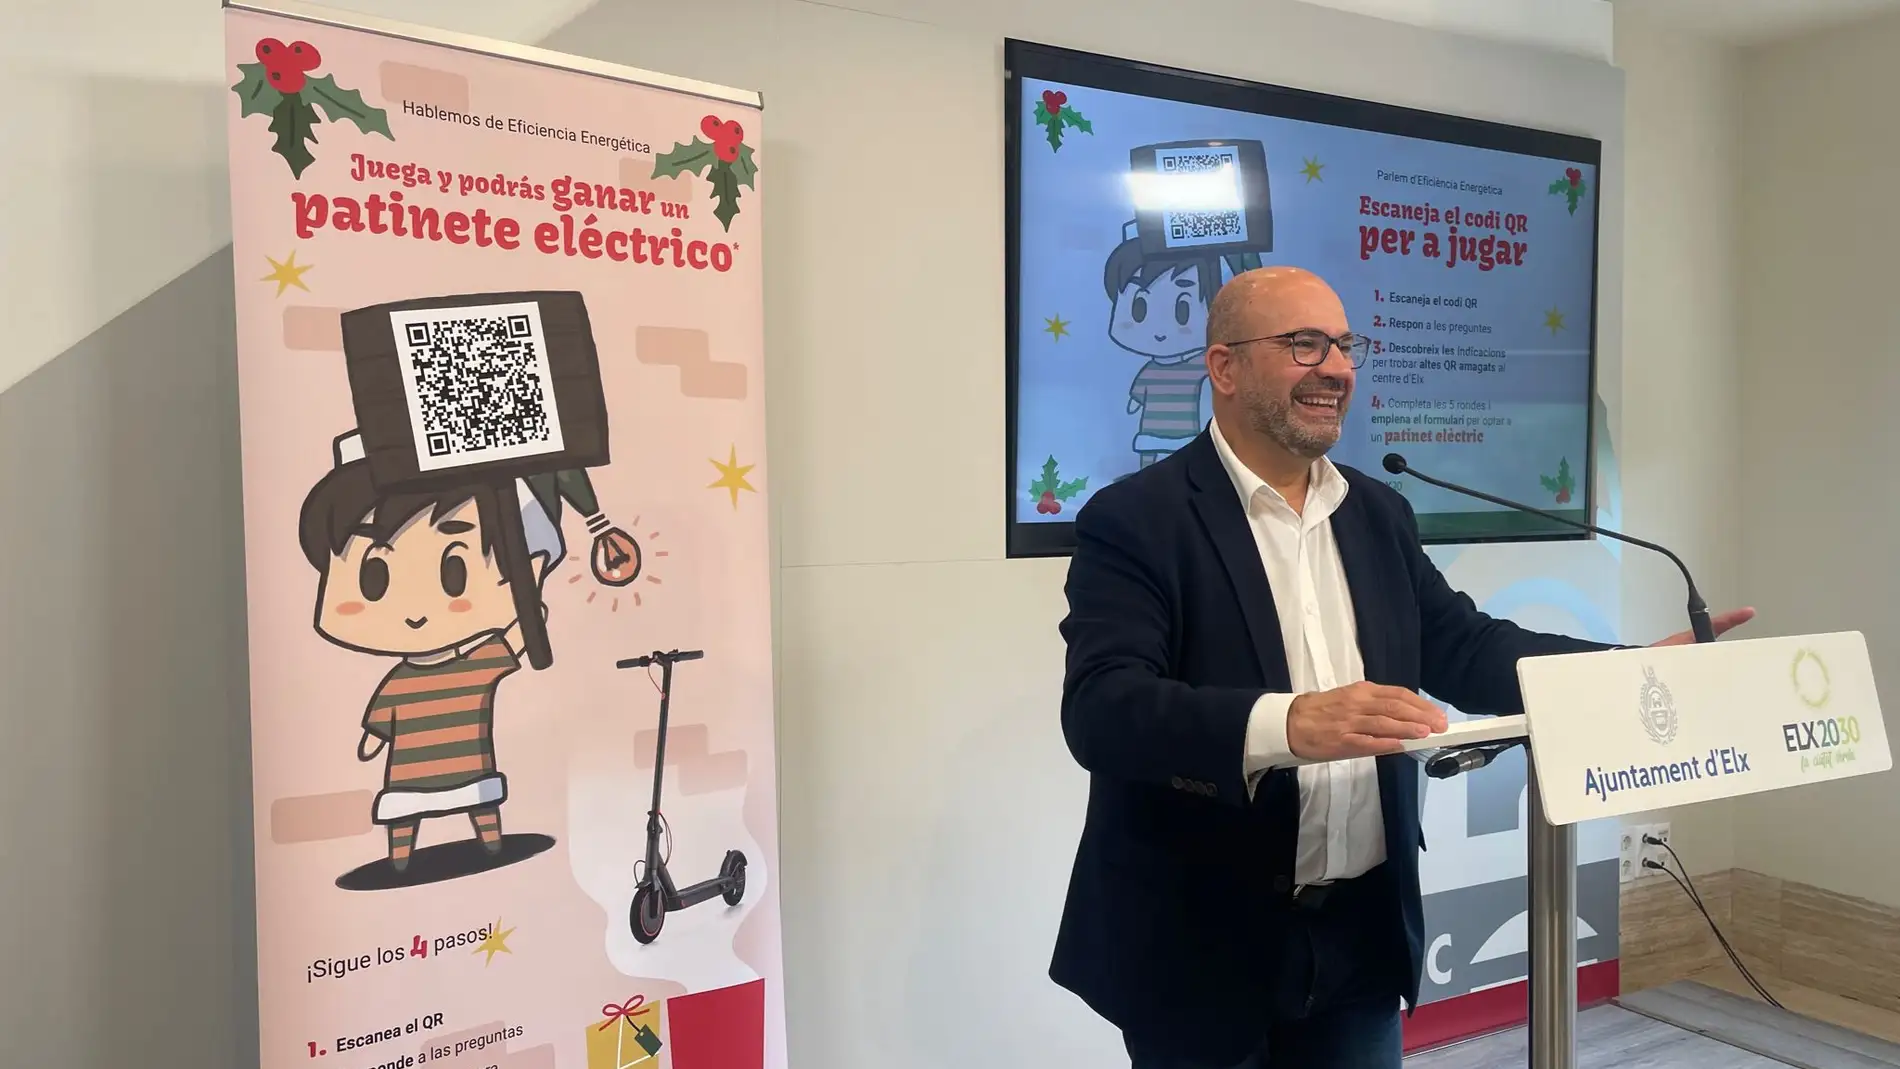 El Ayuntamiento de Elche lanza 'Street Marketing' con el objetivo de concienciar sobre el buen uso energético 